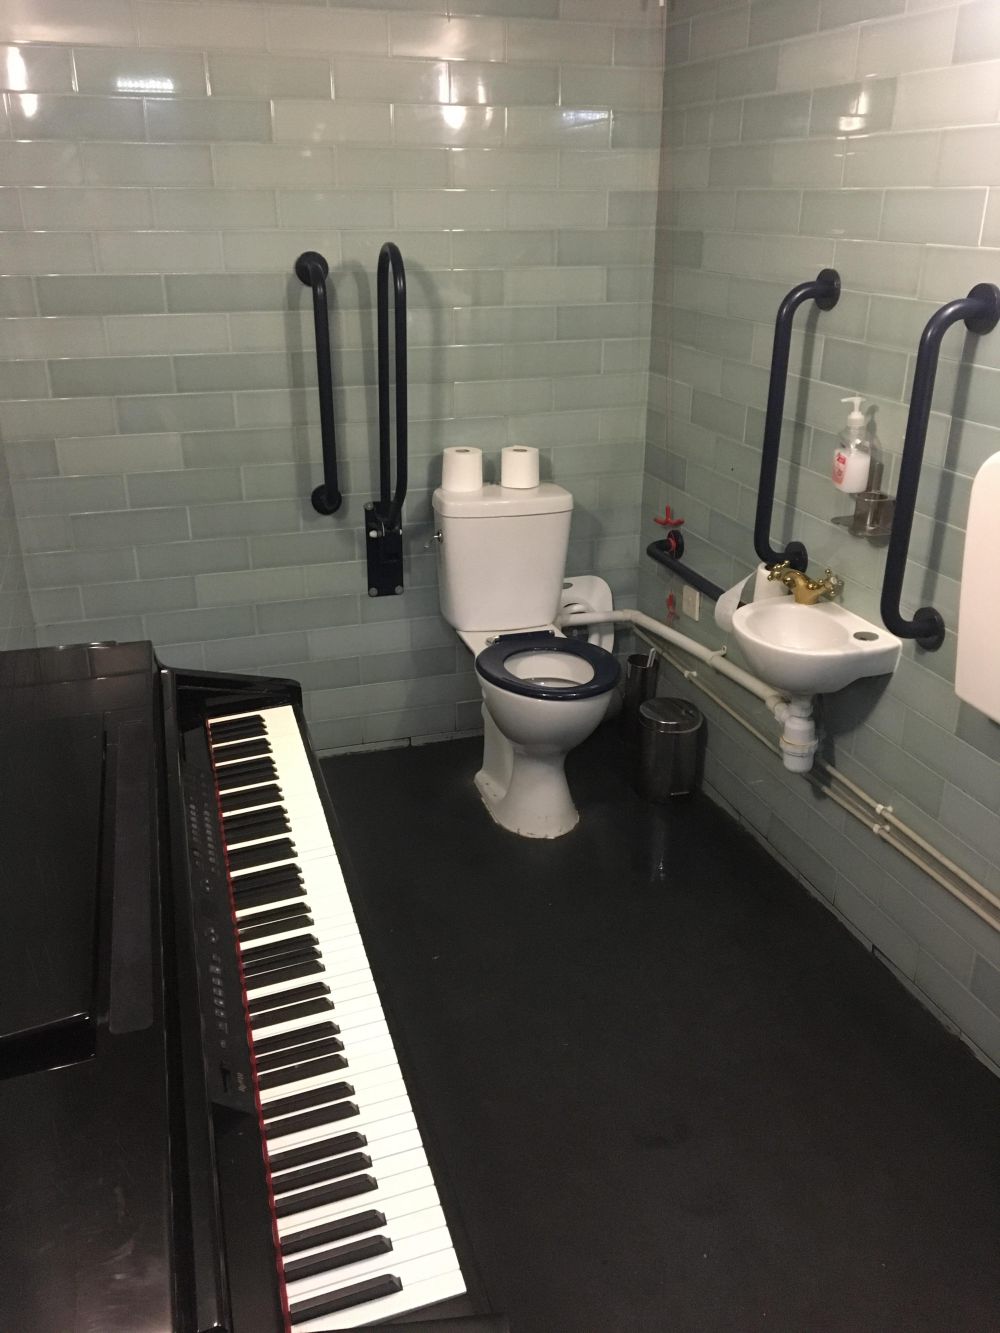 10 Fasilitas Unik di Dalam Toilet Restoran, Ada Piano dan TV?